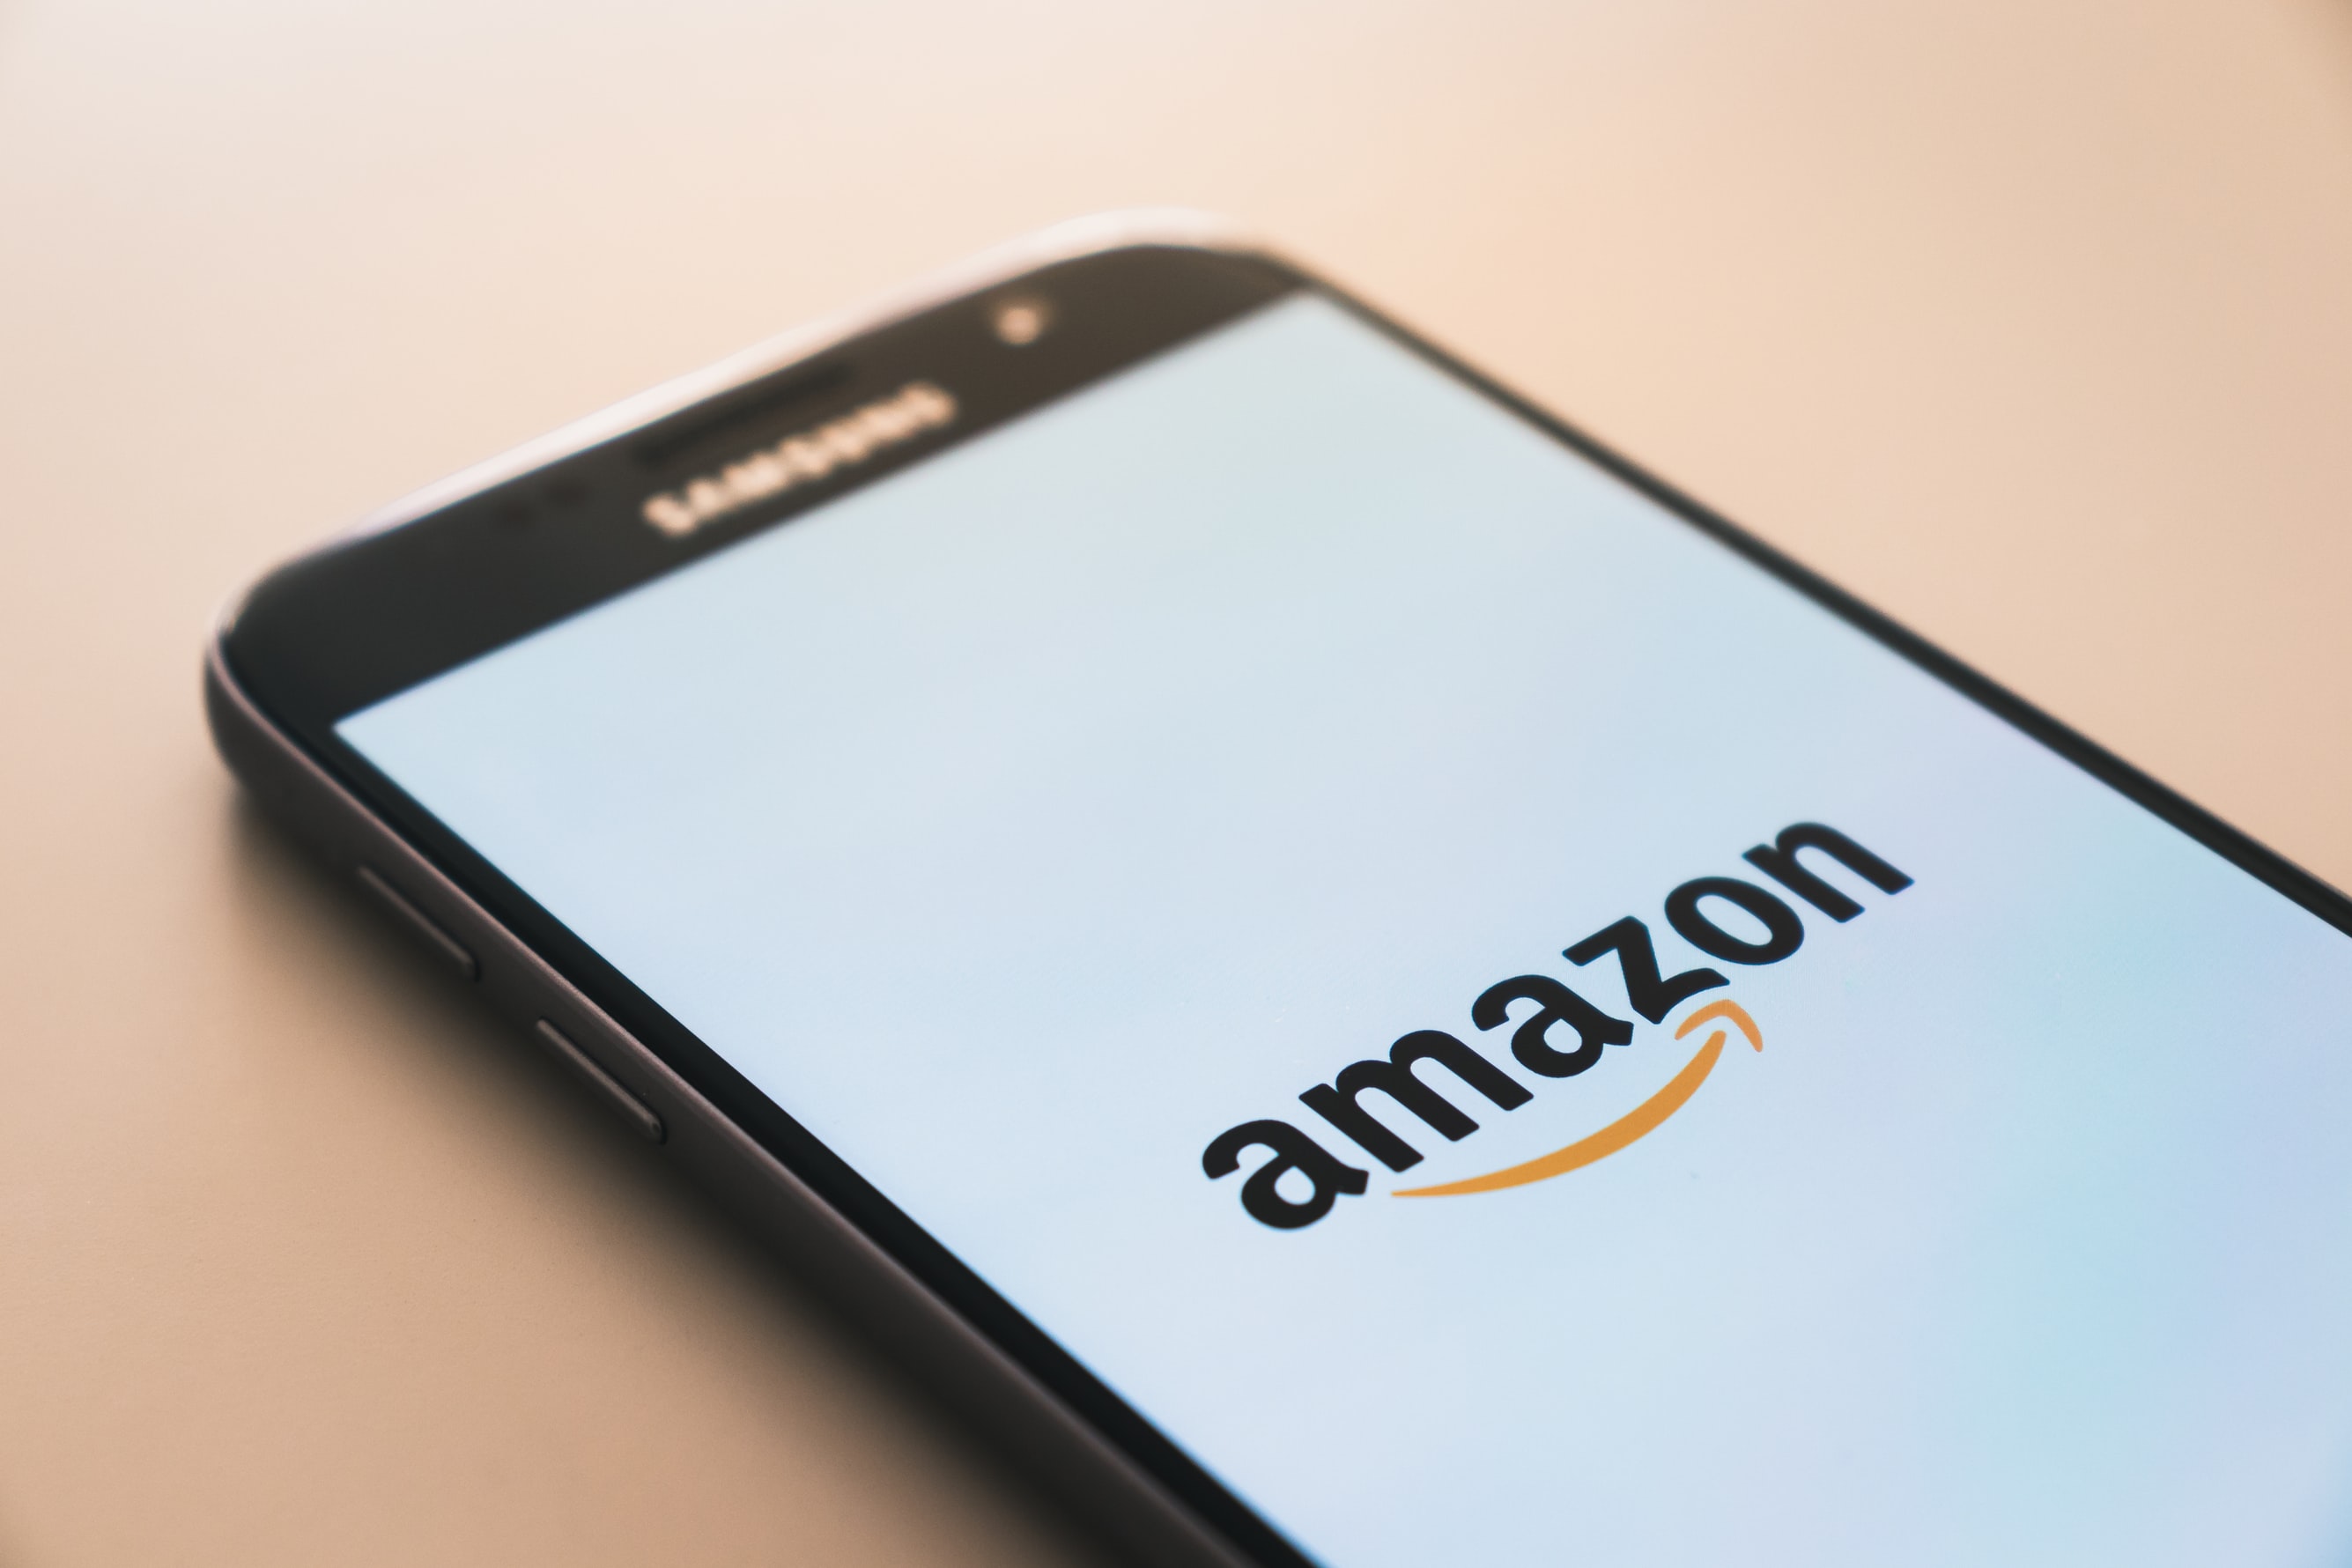 Największe sklepy internetowe – czy pozycja Amazona jest zagrożona?